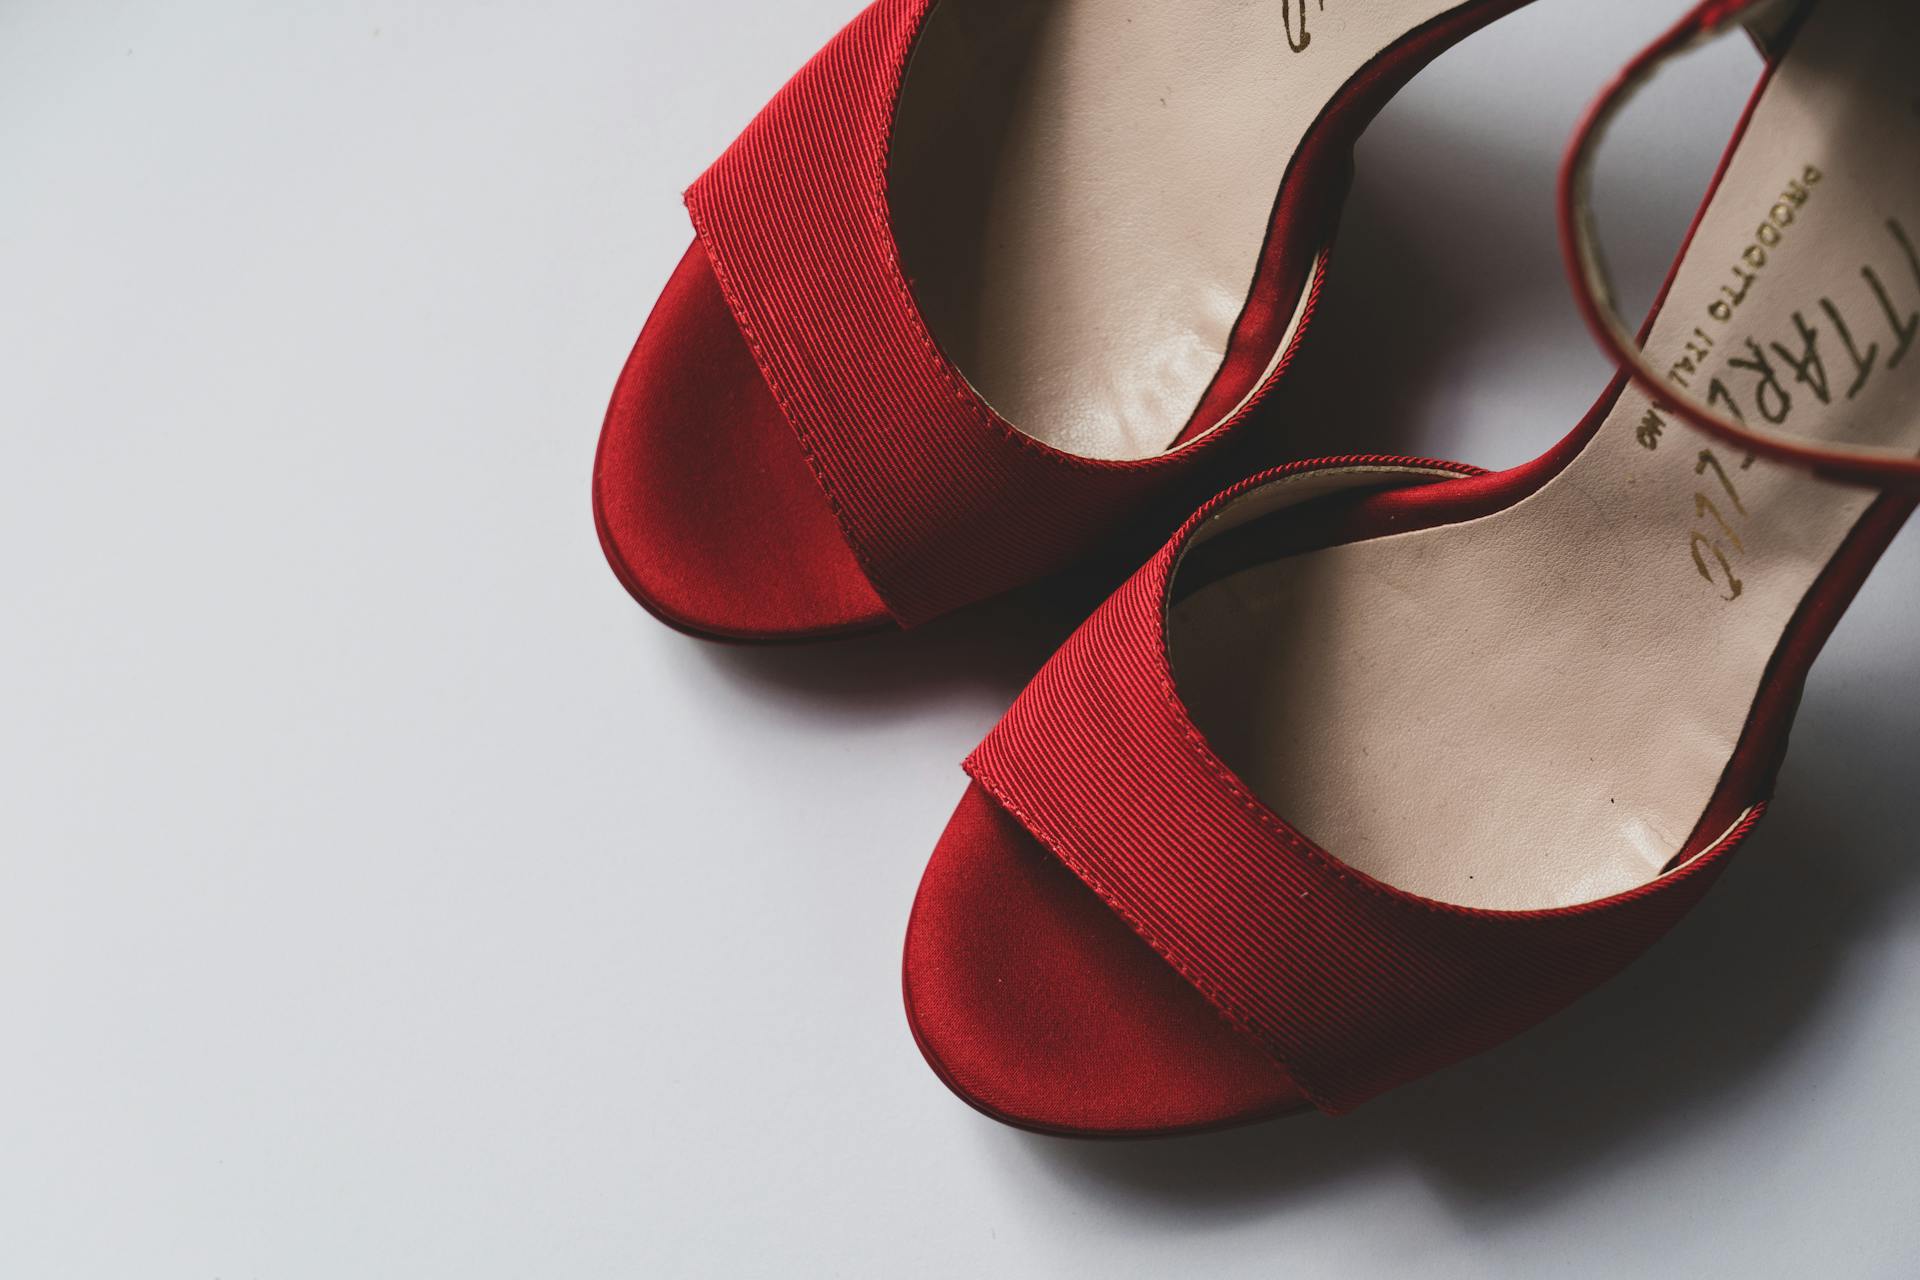 Rote Schuhe auf dem Boden | Quelle: Pexels